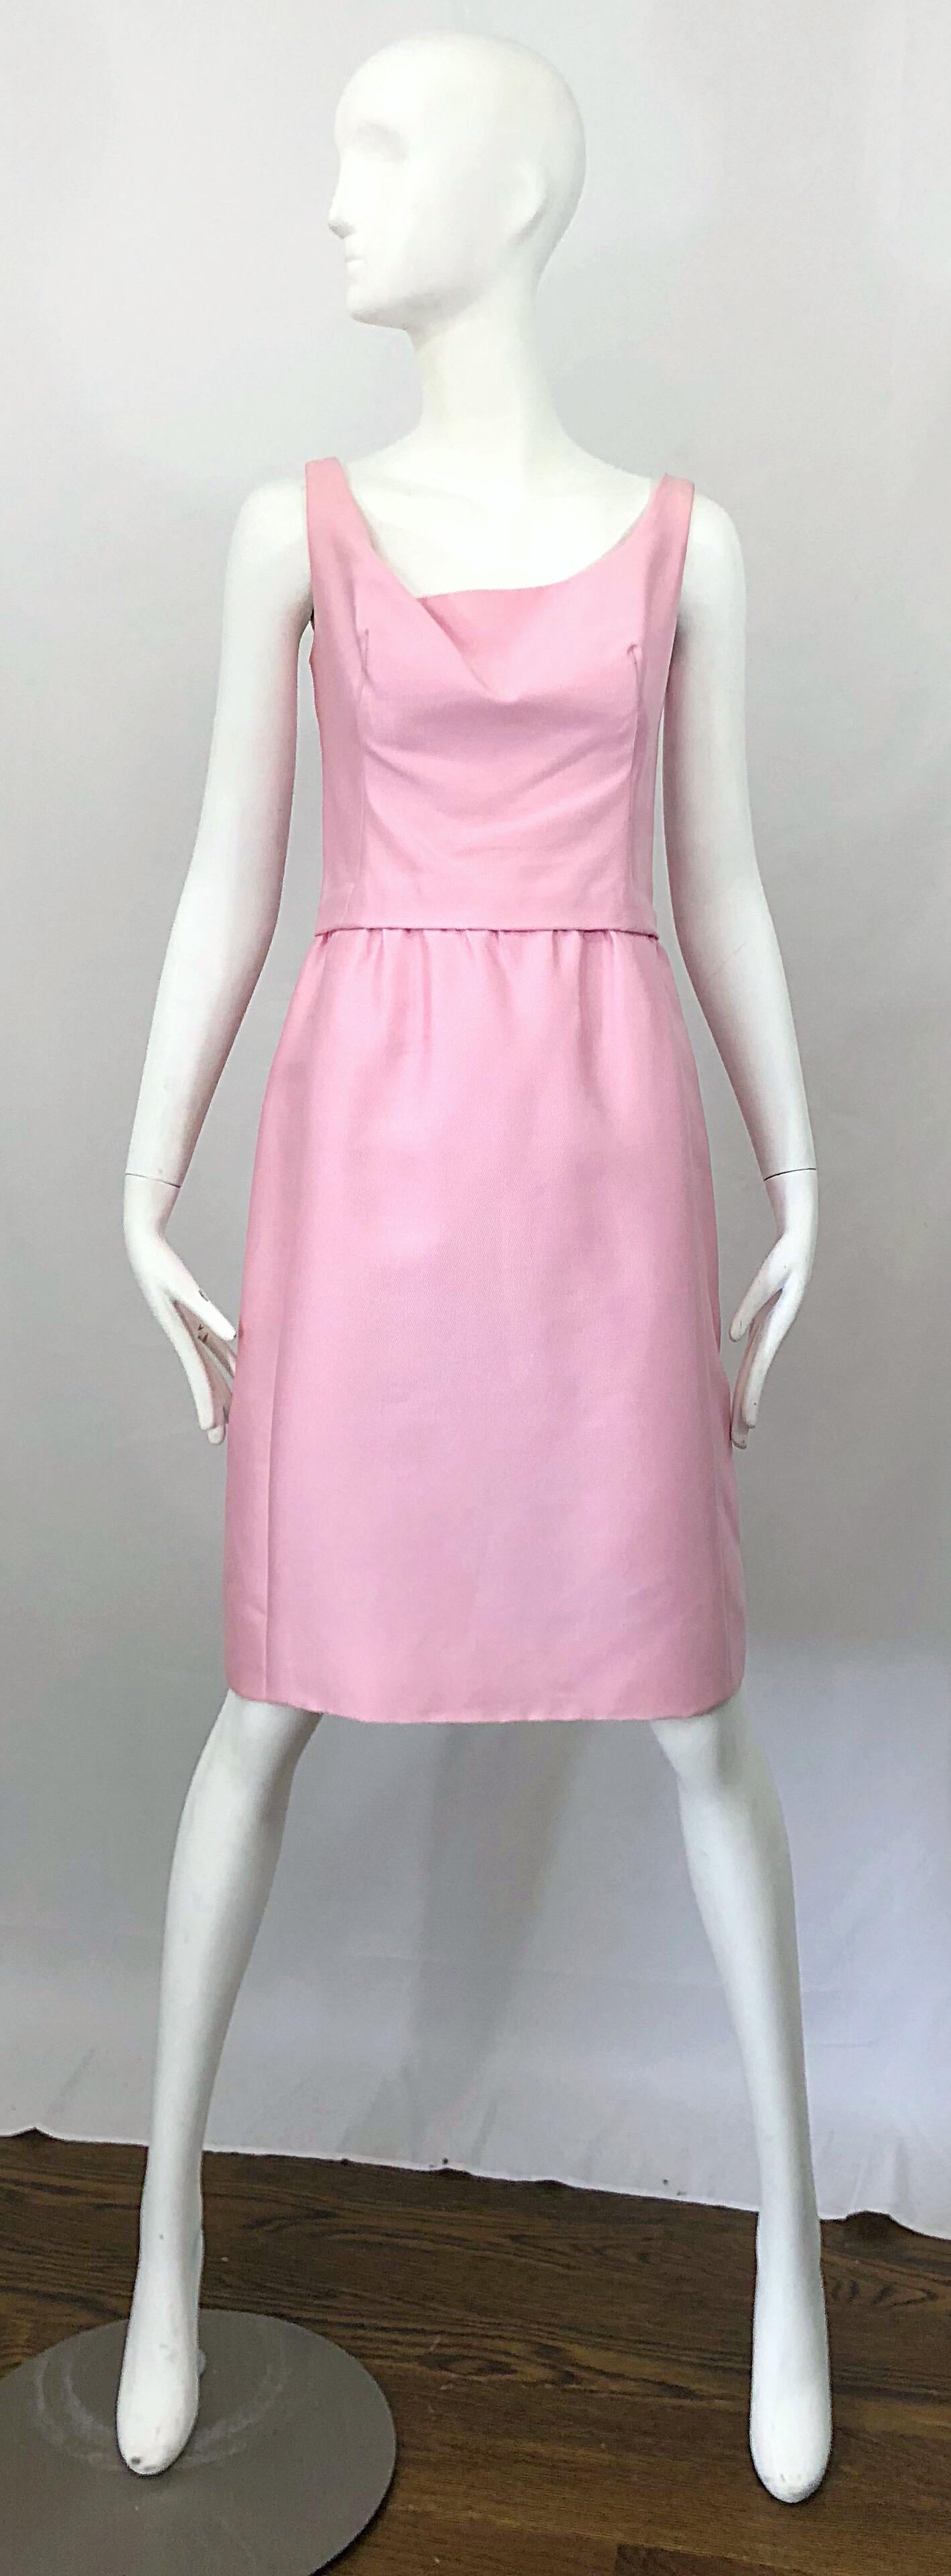 Ensemble robe et veste PAT SANDLER en soie rose clair des années 1960 ! !! La robe est sans manches, avec un corsage drapé et une jupe ample et indulgente. Fermeture à glissière entièrement métallique dans le dos avec fermeture à crochet. La veste